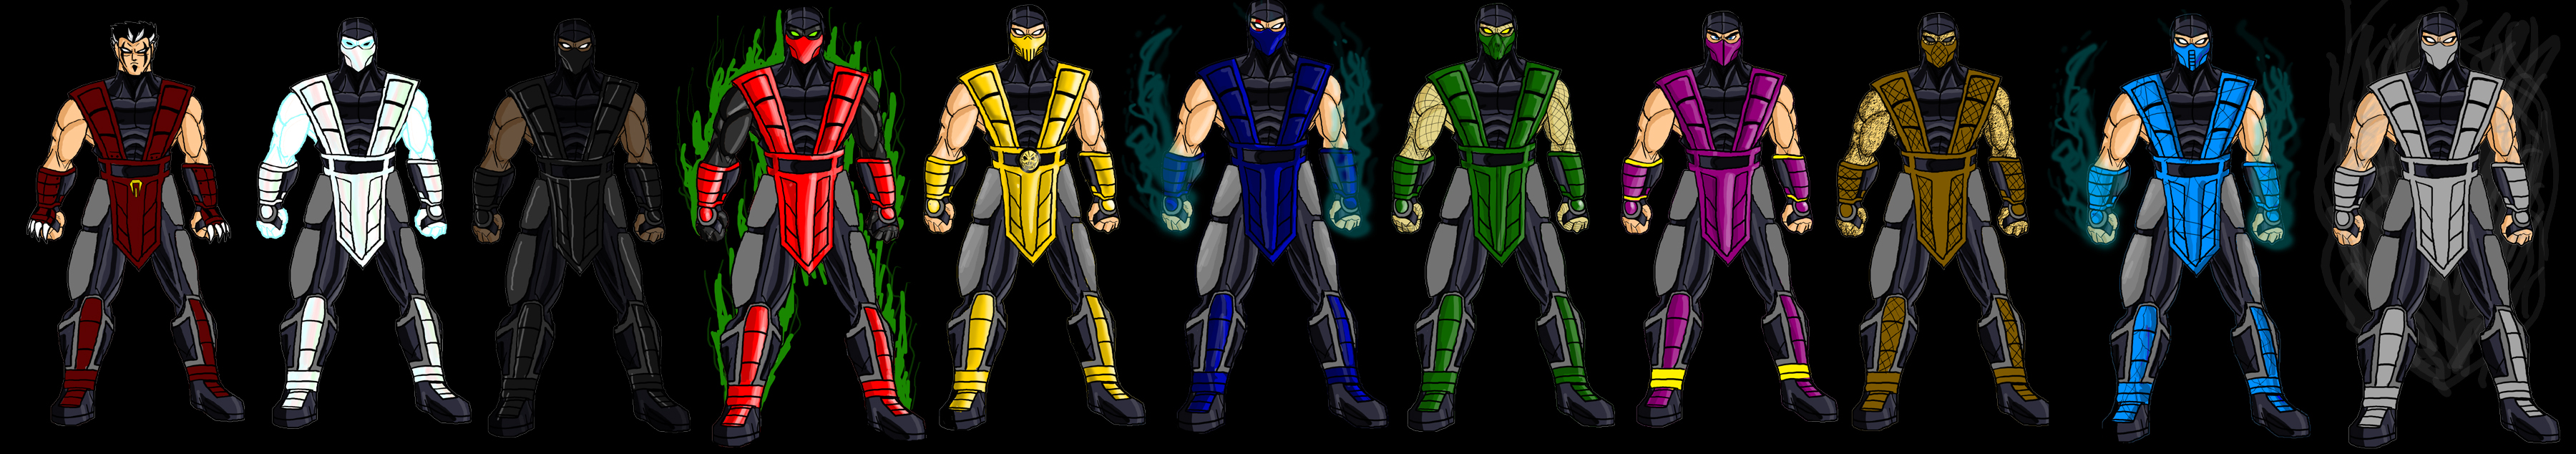 Mortal Kombat Ninjas By Dskemmanuel